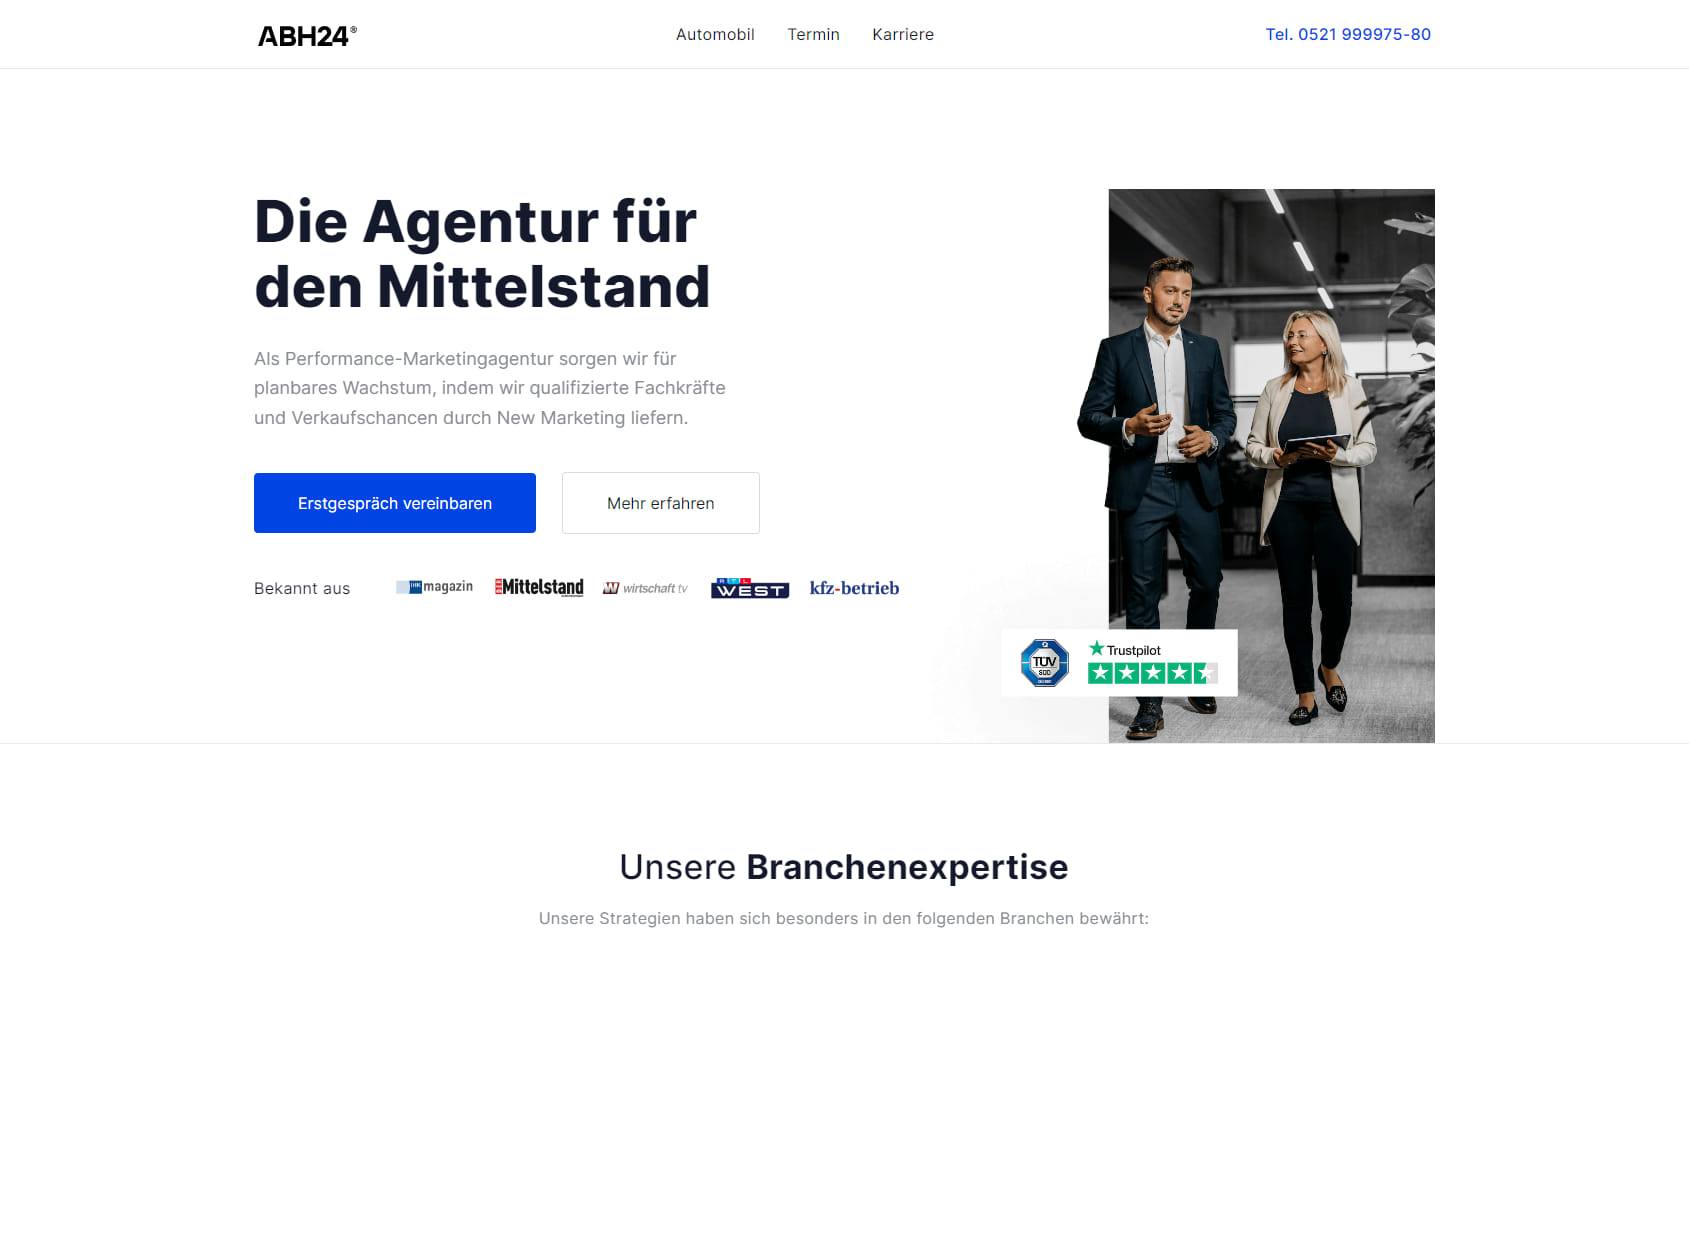 ABH24 GmbH & Co. KG